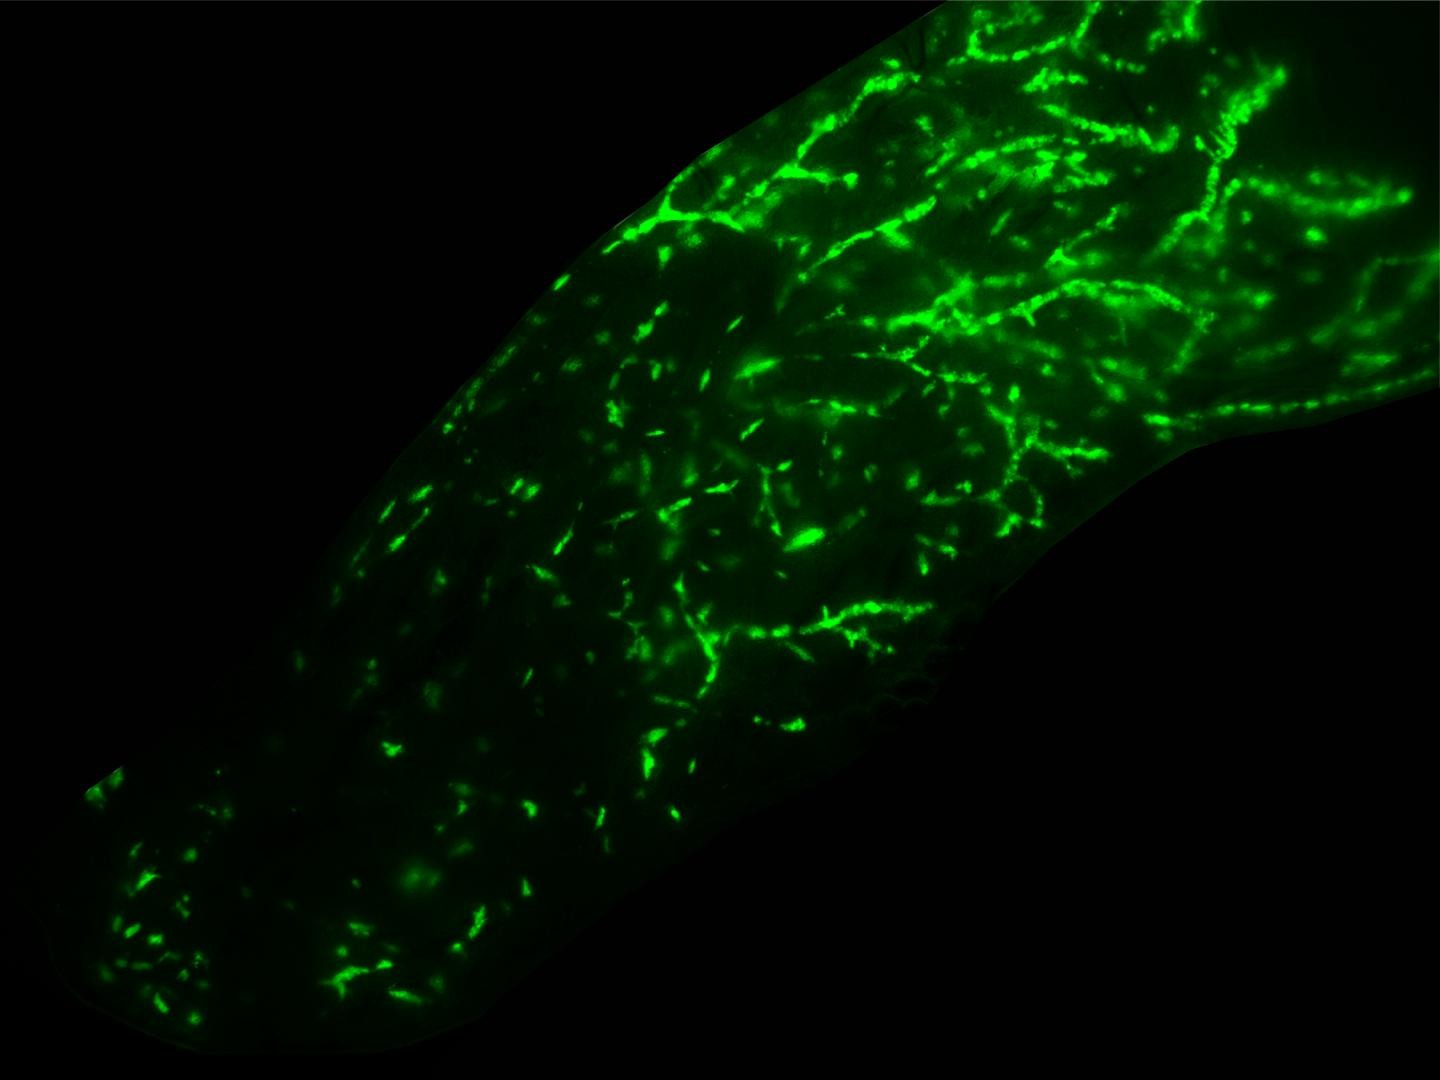 Acima, micrografia estéreo de fluorescência de uma glândula mamária de camundongo injetada por via intraductal com células epiteliais normais da mama humana (Foto: Marie Shamseddin (EPFL))